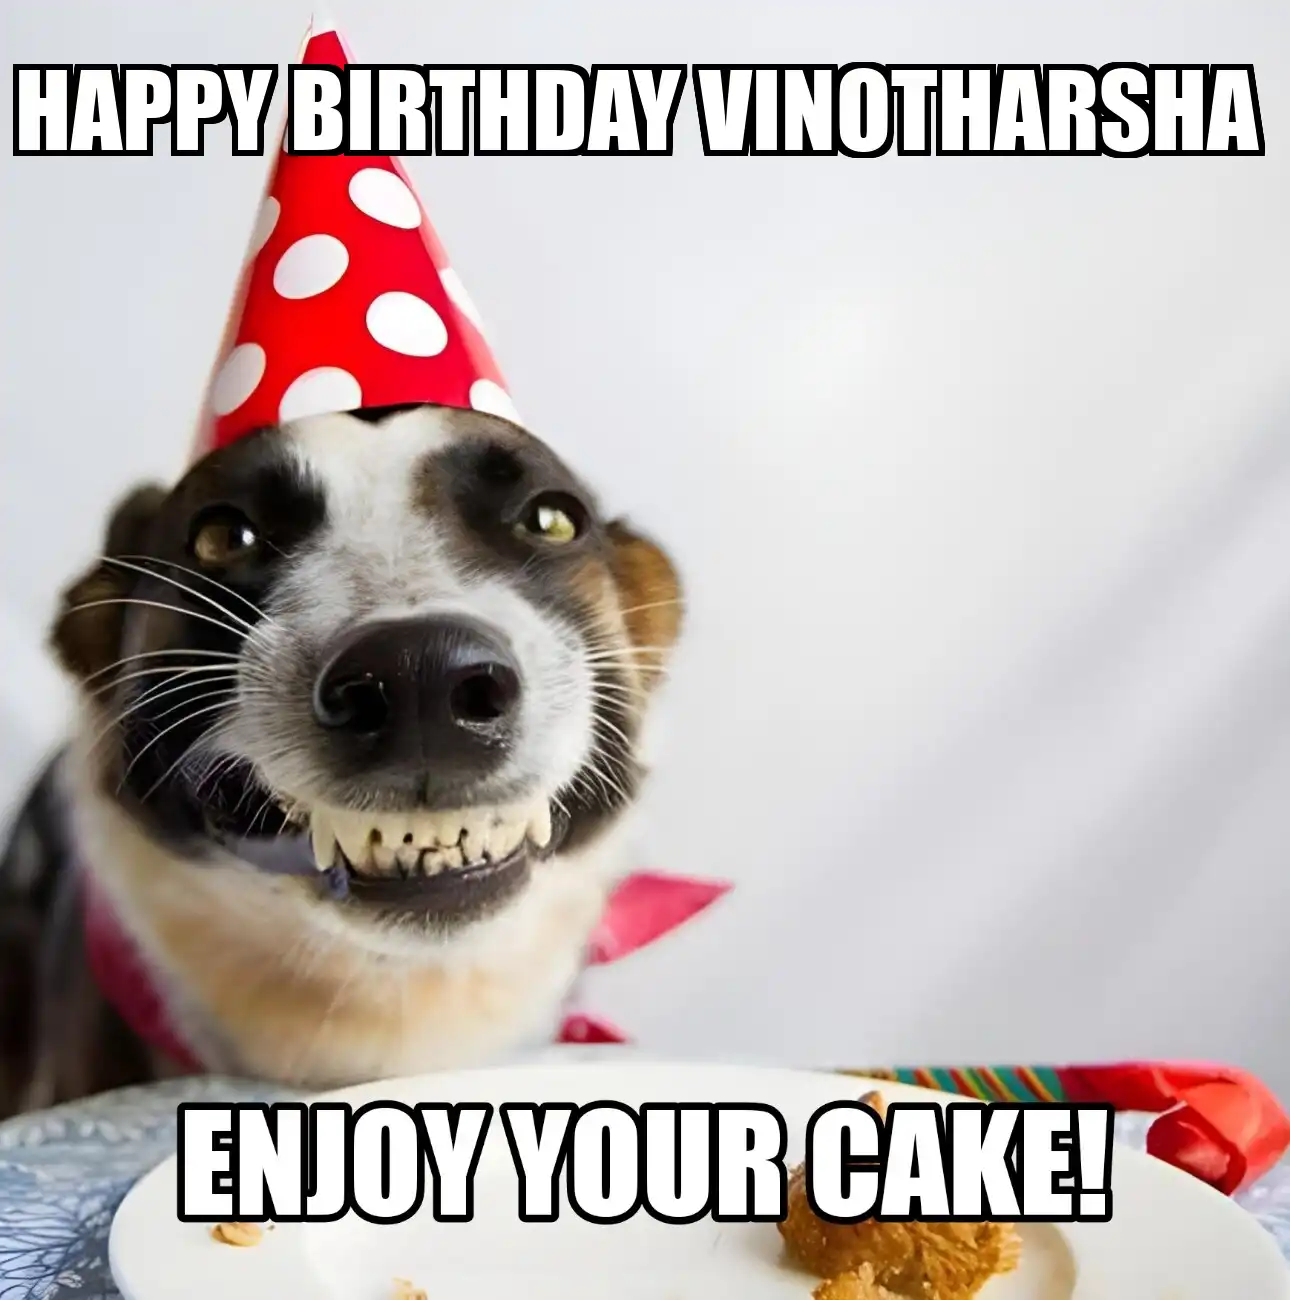 Happy Birthday Vinotharsha Enjoy Your Cake Dog Meme